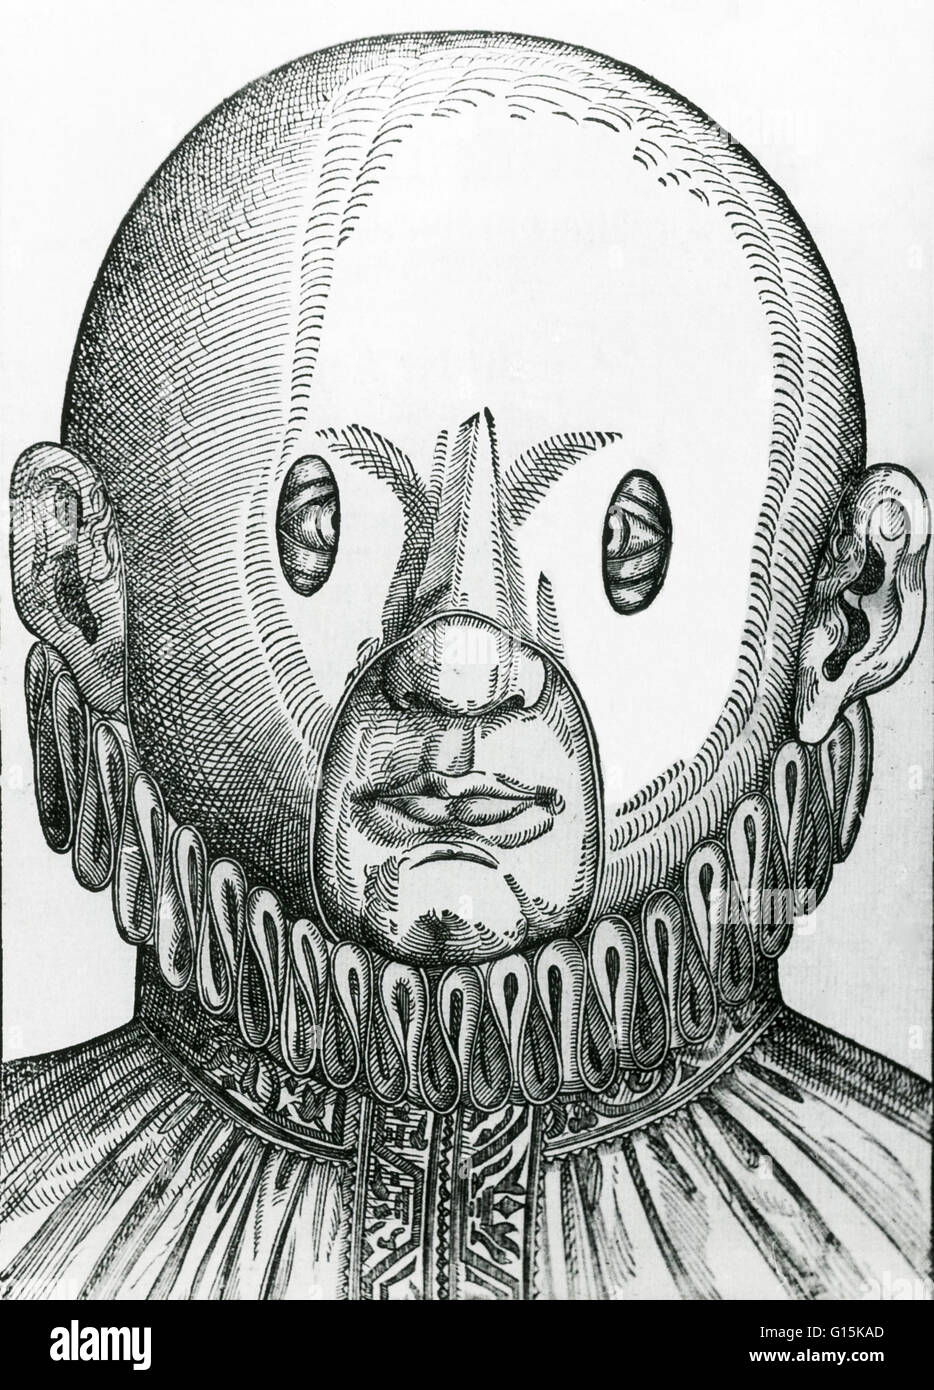 Una maschera per correggere gli occhi incrociati, dal 1583. La maschera è stata sviluppata da Georg Bartisch (1535-1606), che era nato un contadino vicino a Dresda, Germania. Sebbene egli non era sufficientemente ricca di perseguire la formazione formale in medicina, divenne un successo barbiere di sovratensione Foto Stock